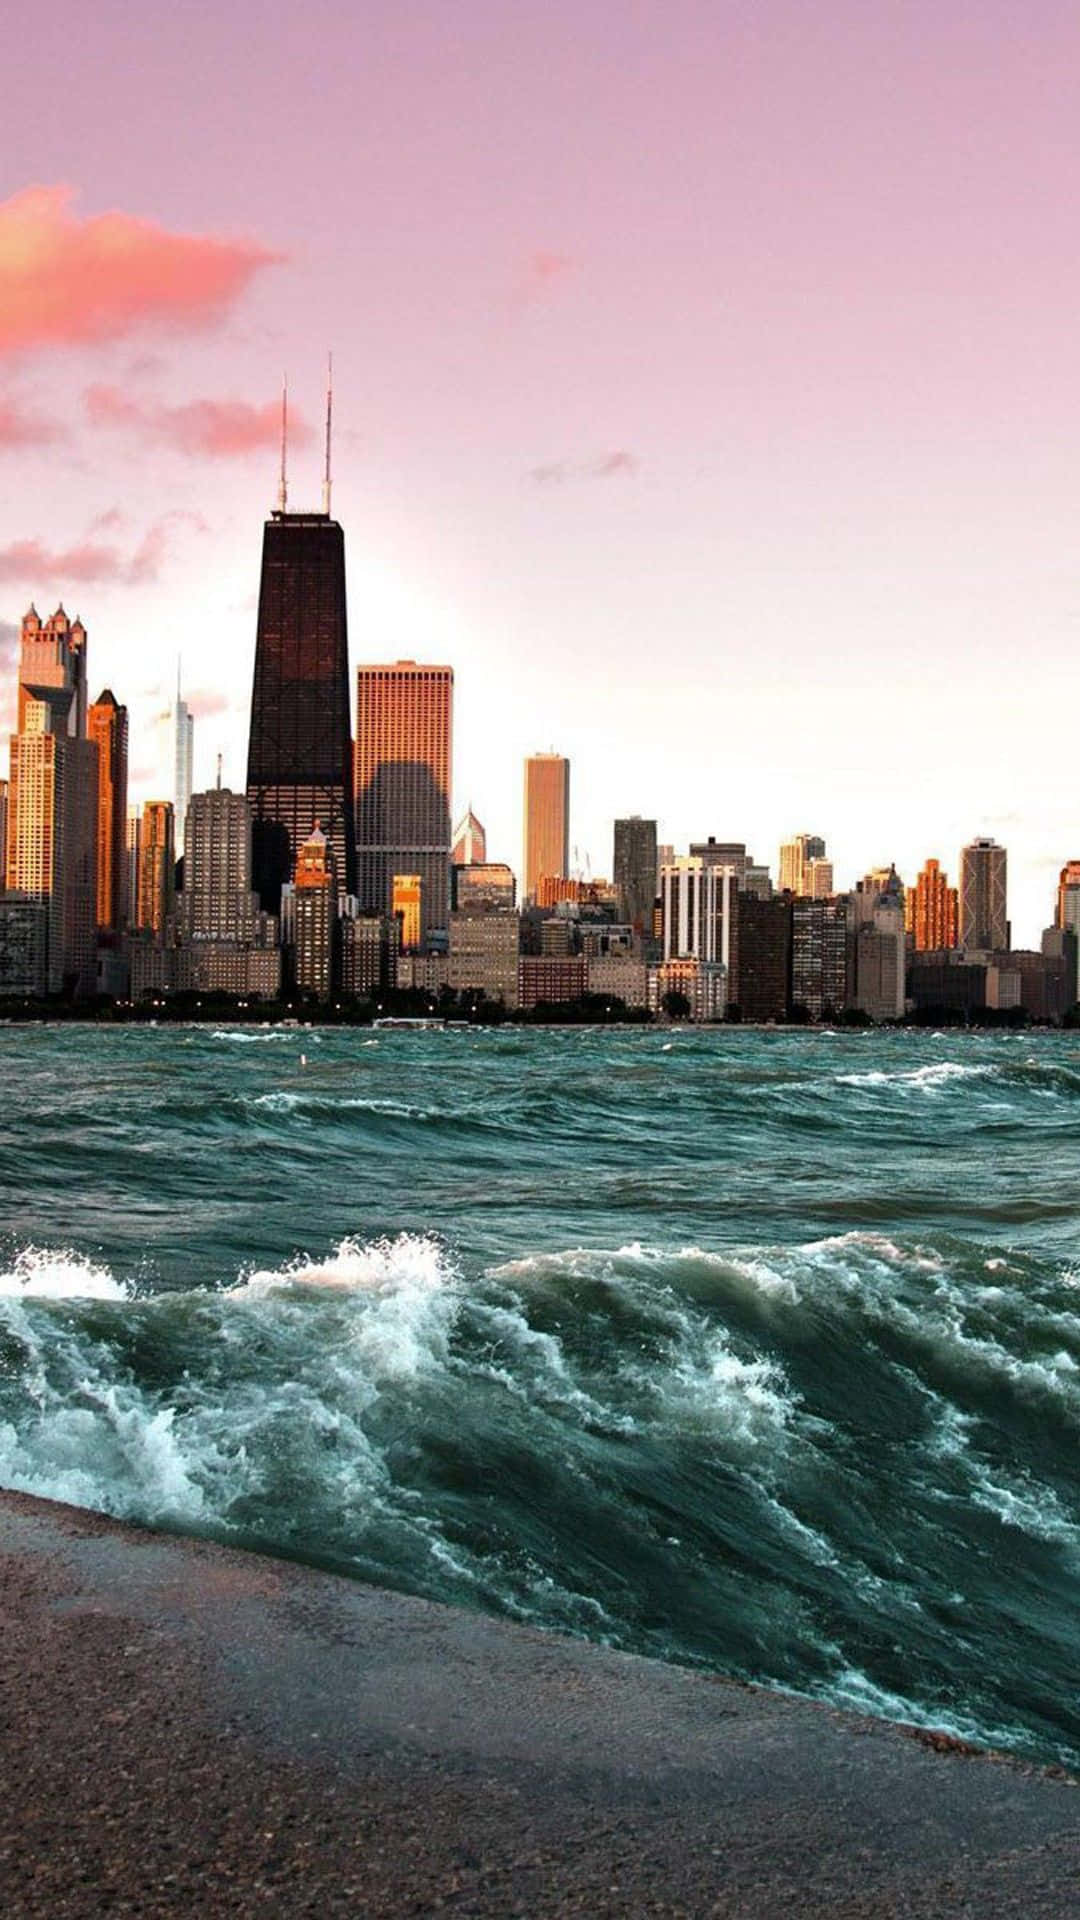 Denfantastiske Skyline Langs Magnificent Mile Set Fra Lake Michigan I Chicago.